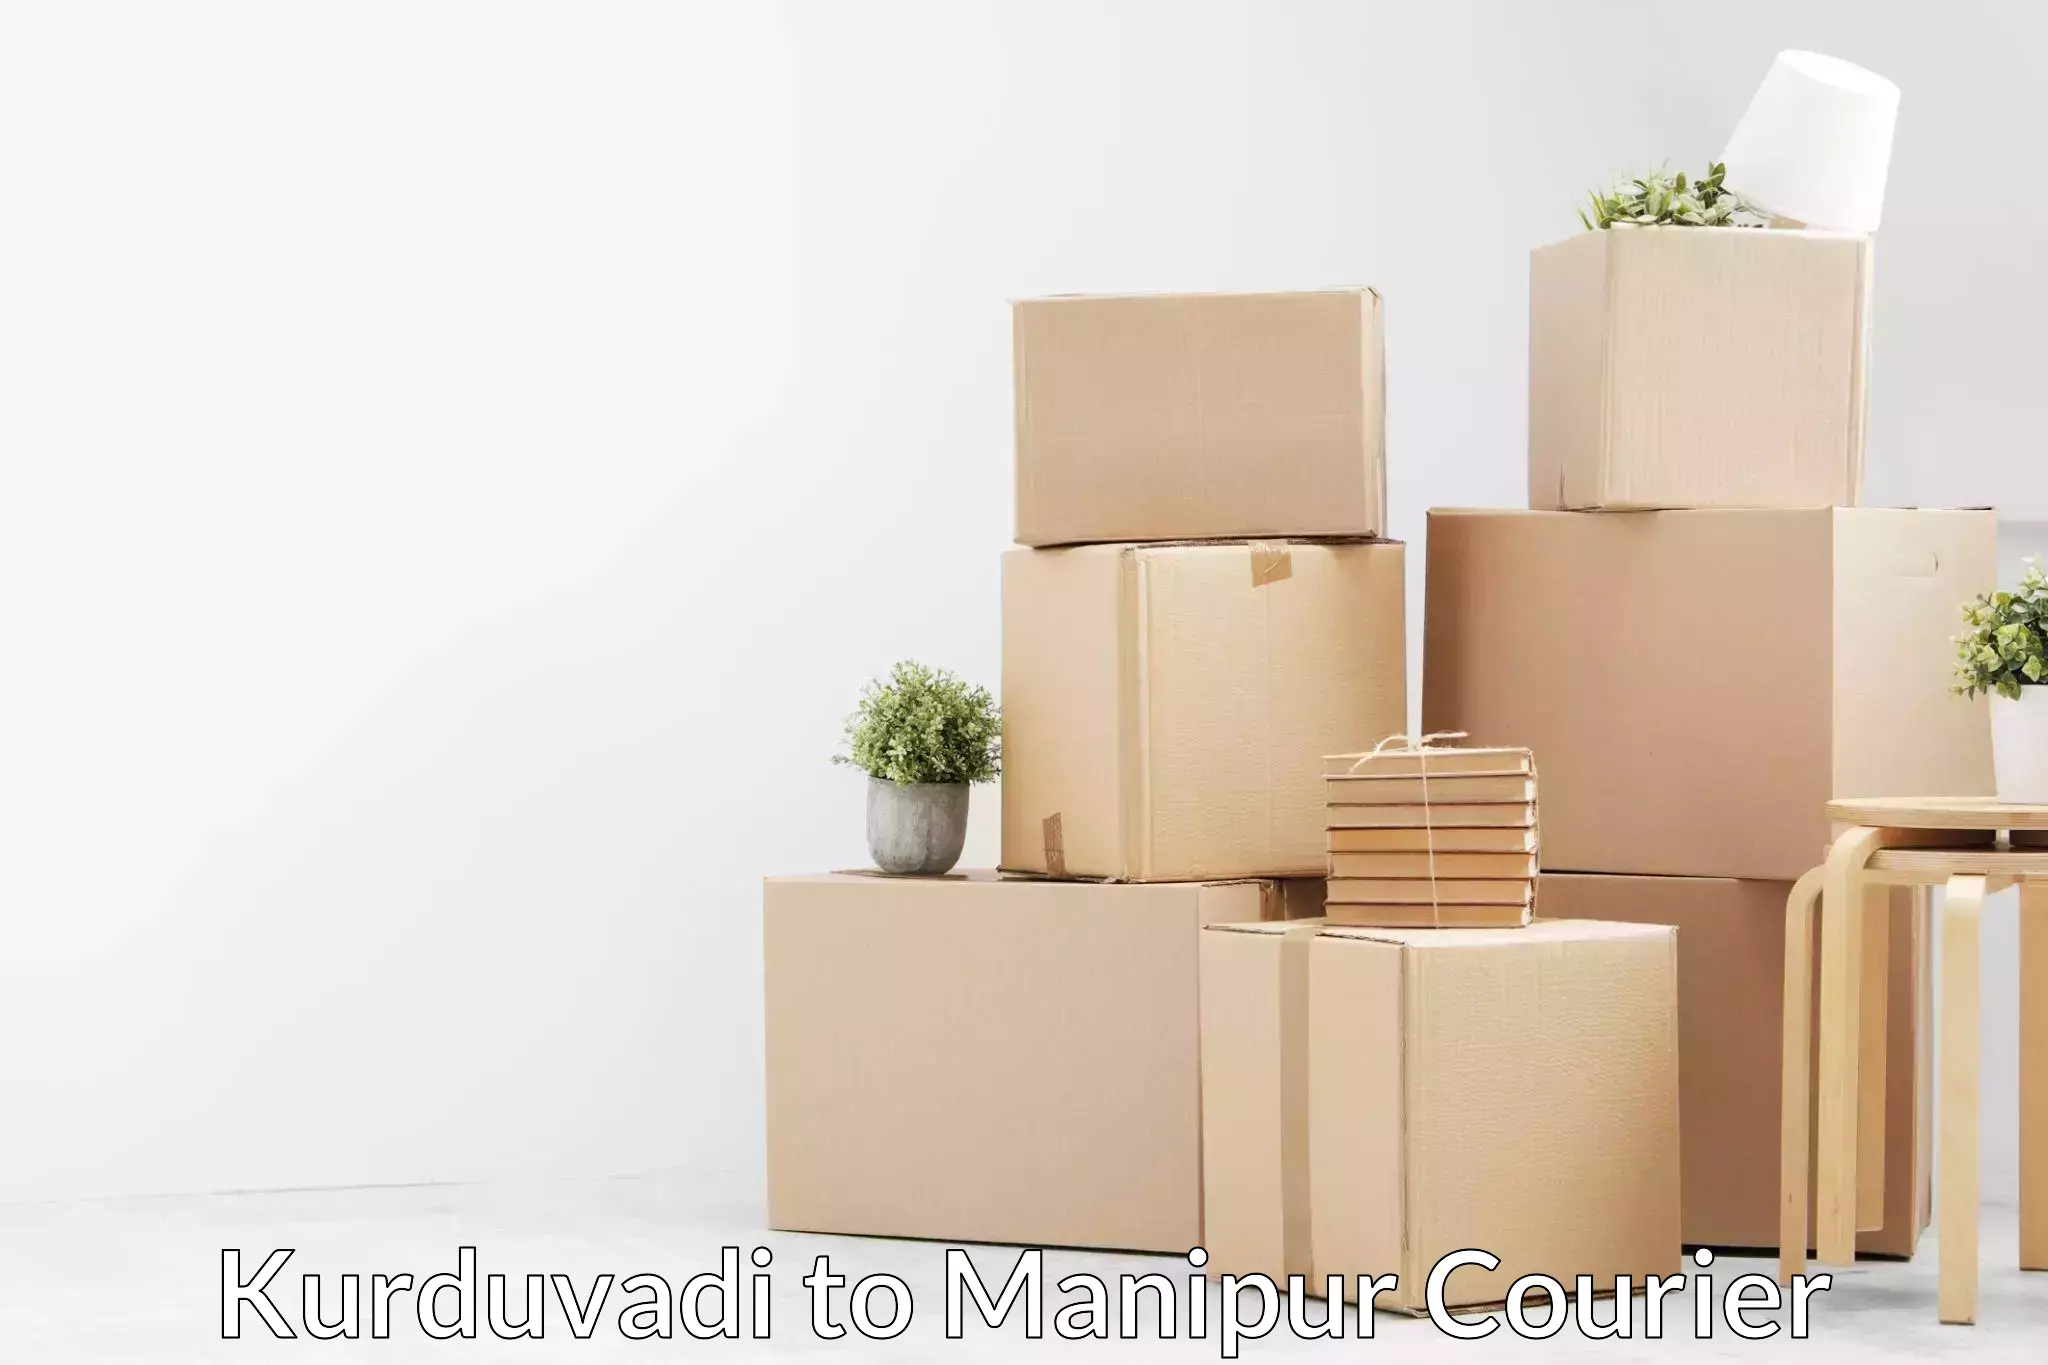 Quality furniture transport Kurduvadi to Manipur